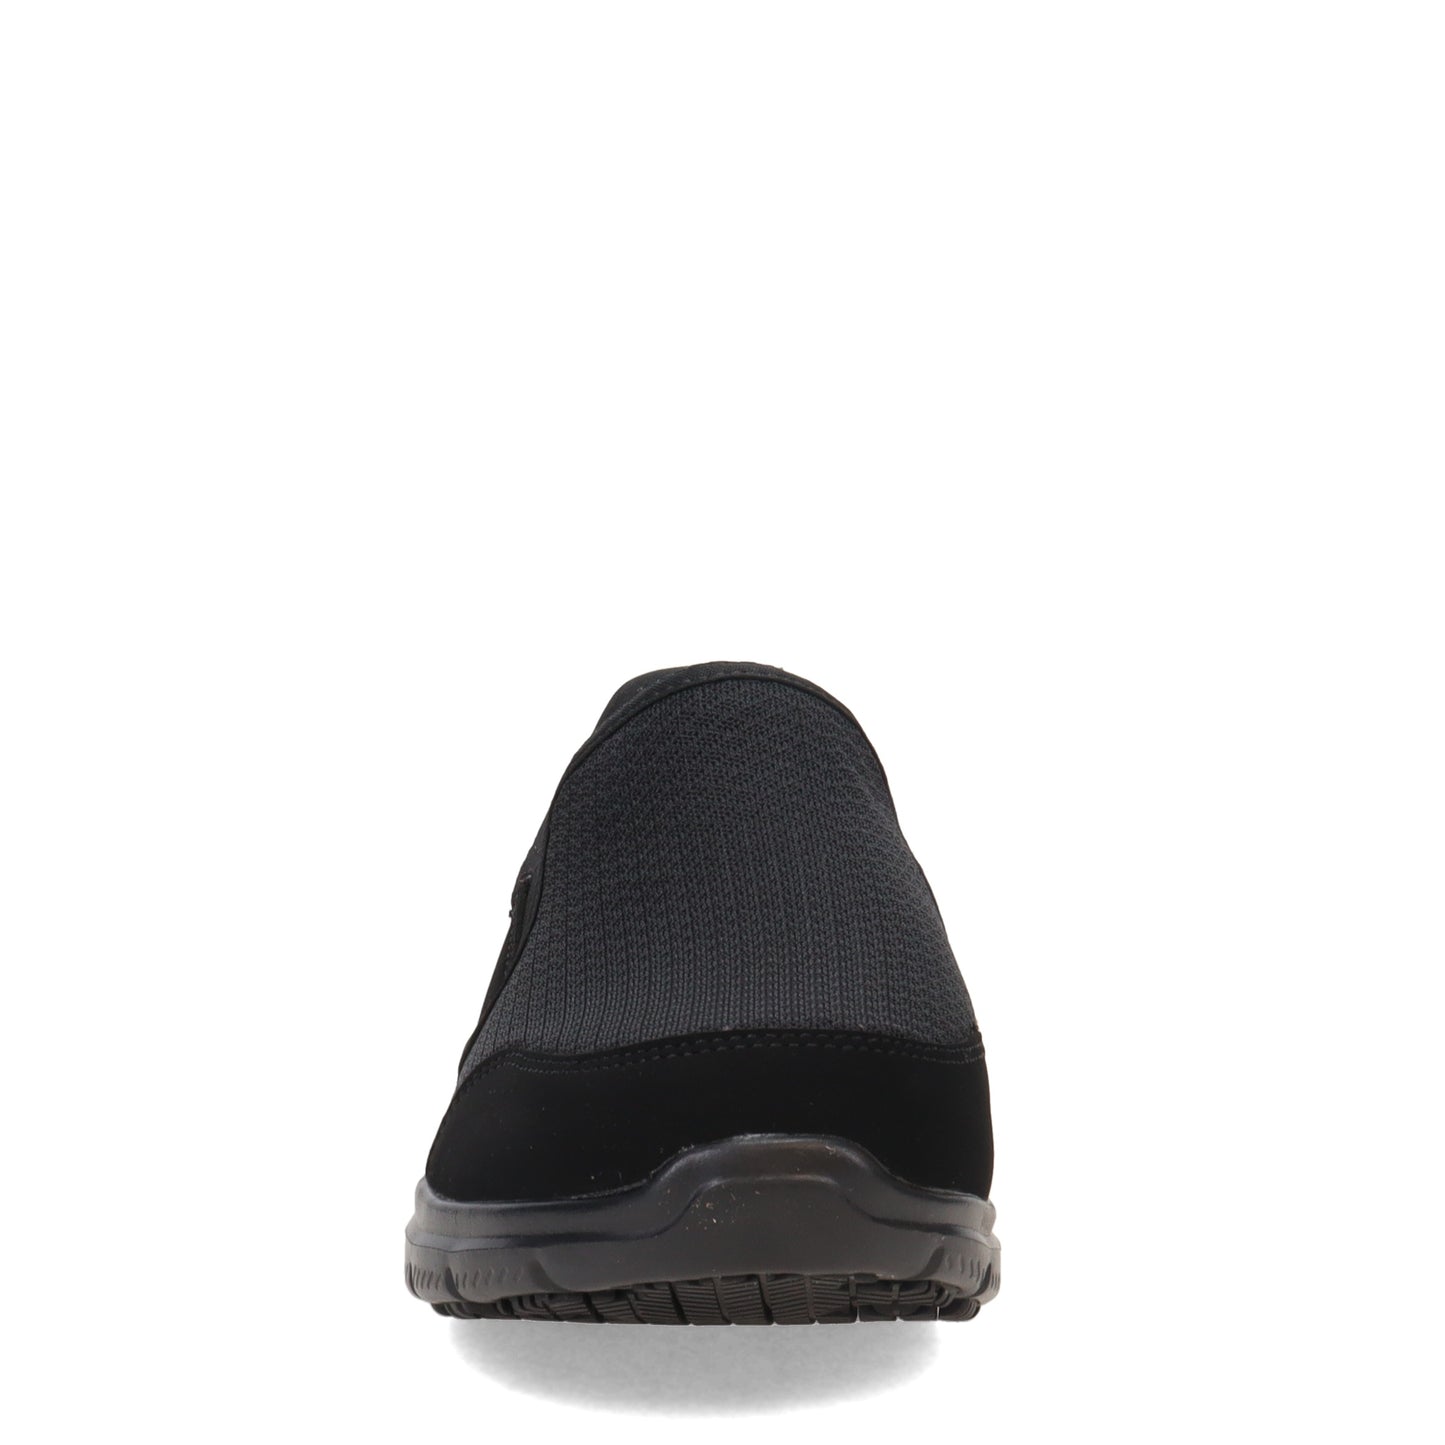 Peltz Shoes  Women's SKECHERS WORK COZARD SLIP RESISTANT SHOE Black 76580W-BLK